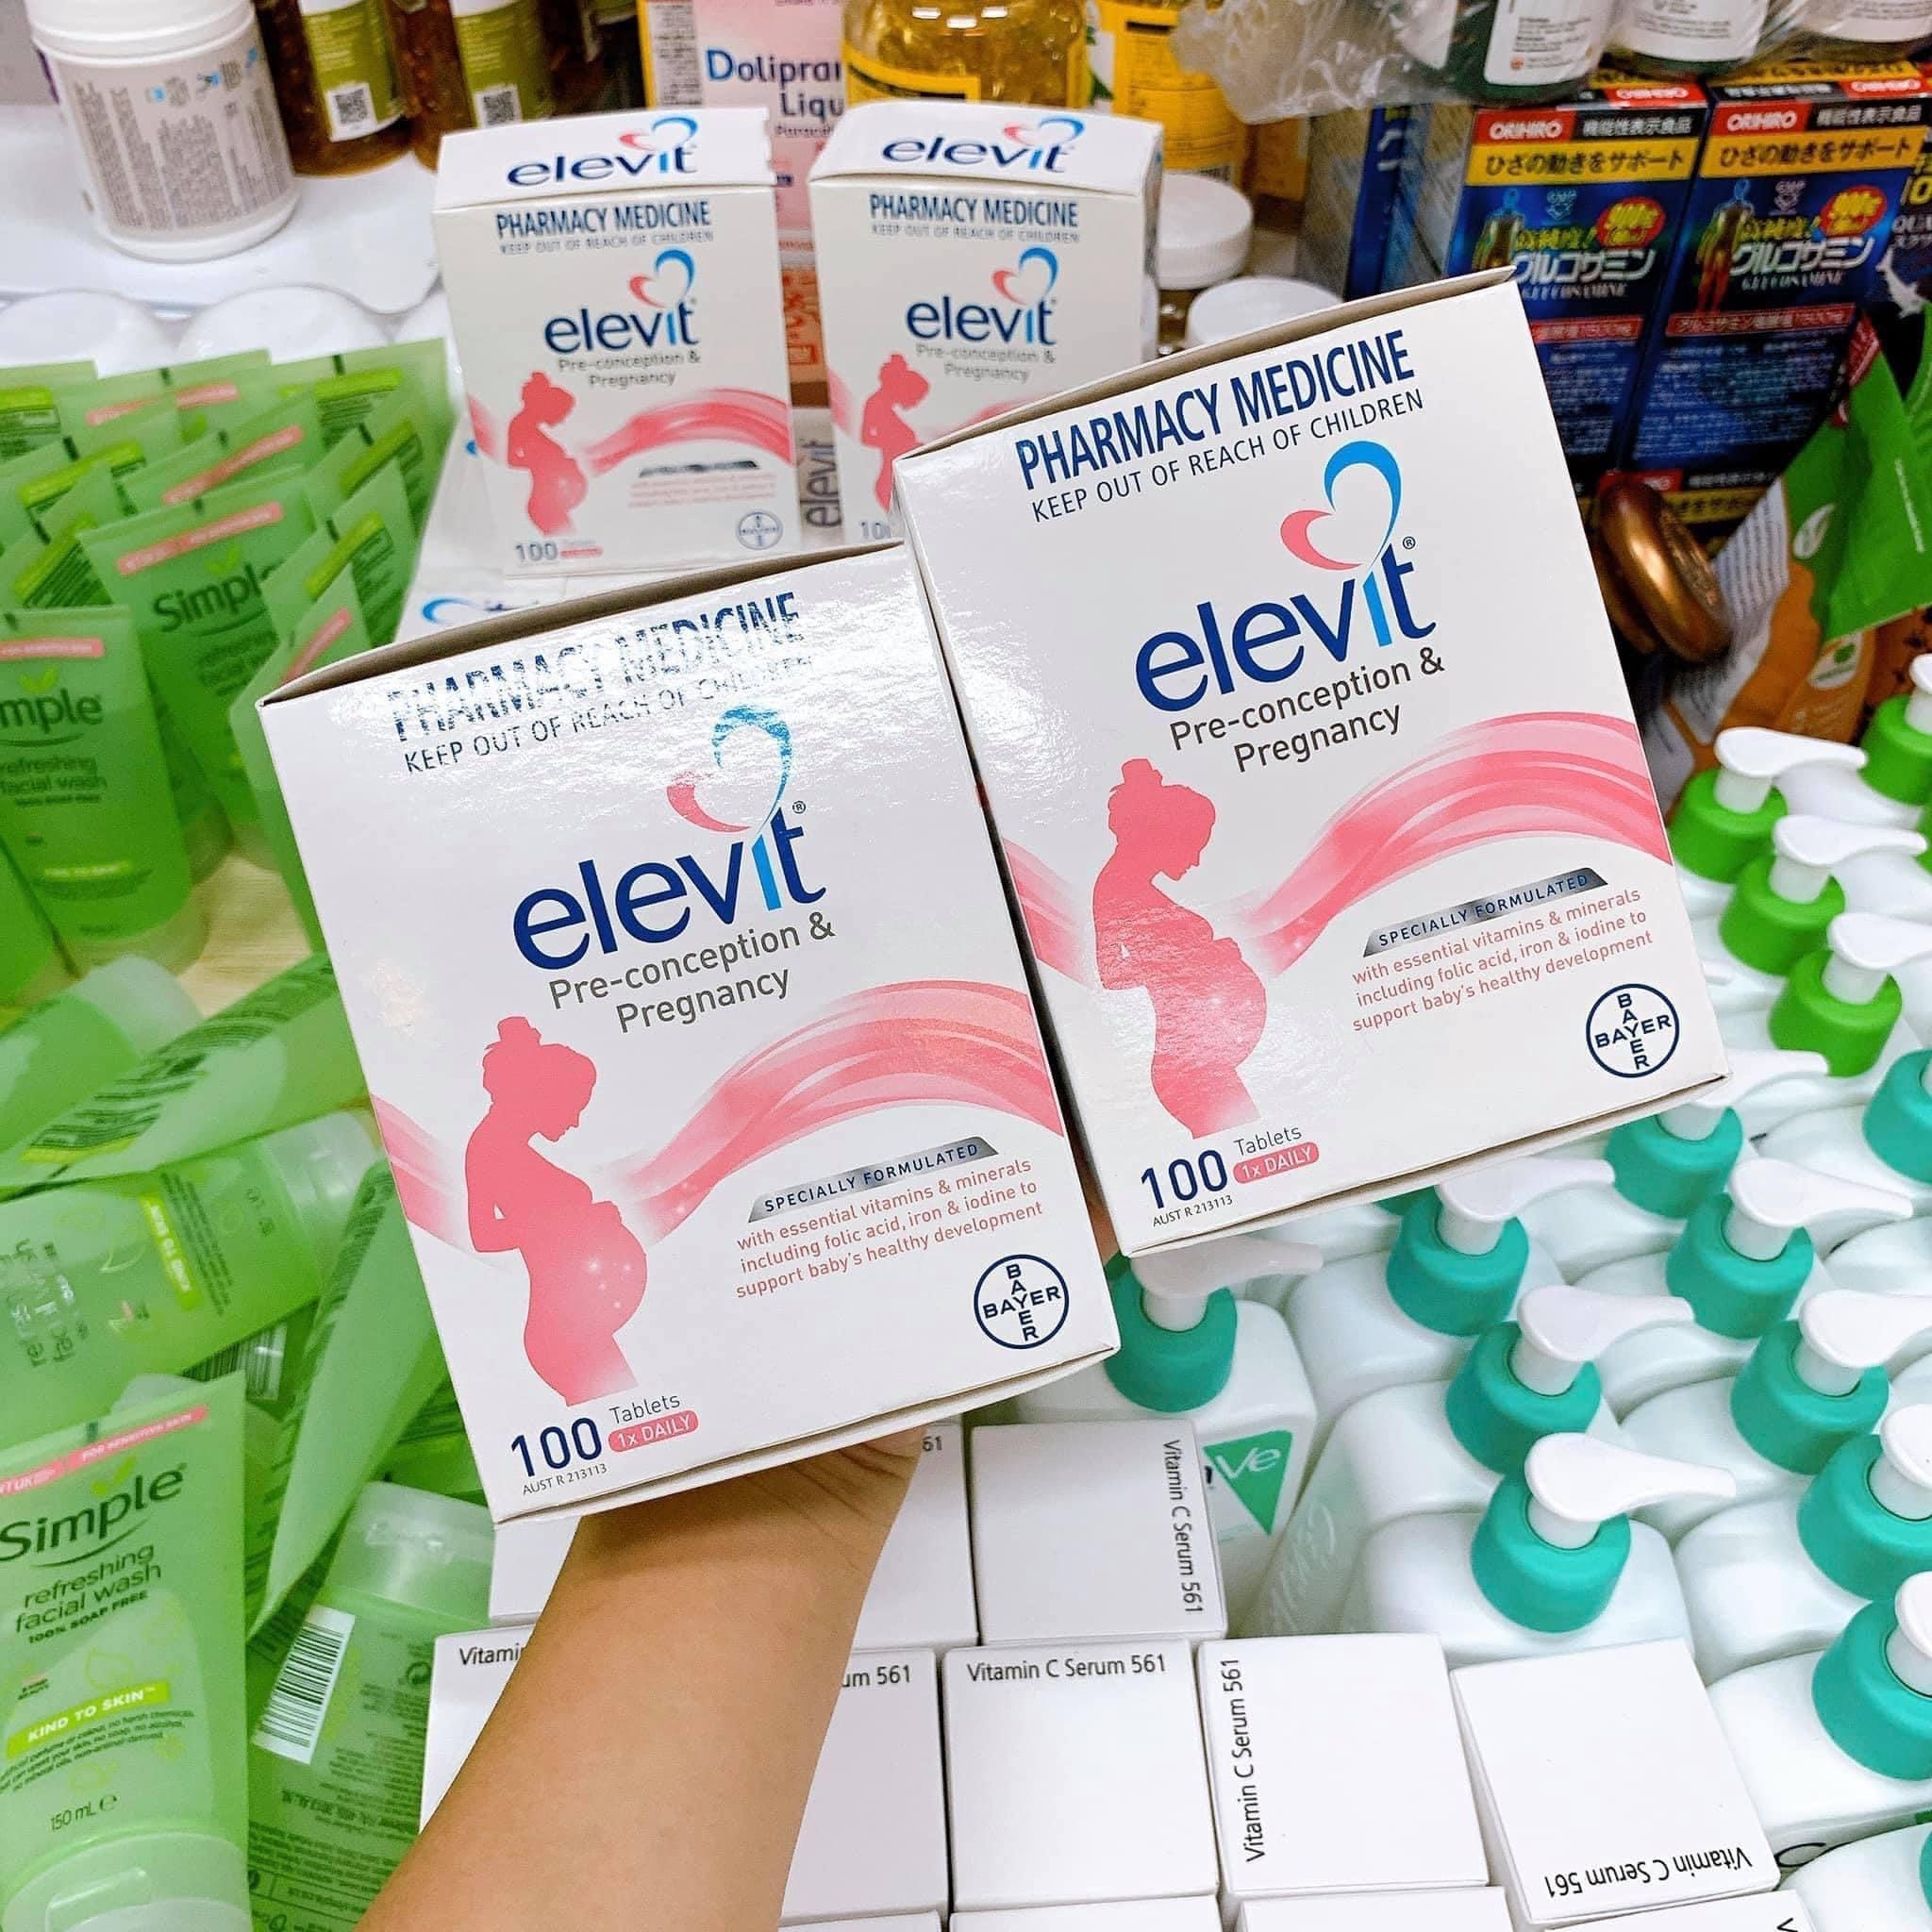 Thuốc Elevit có tác dụng gì khi sử dụng trước khi mang thai?
